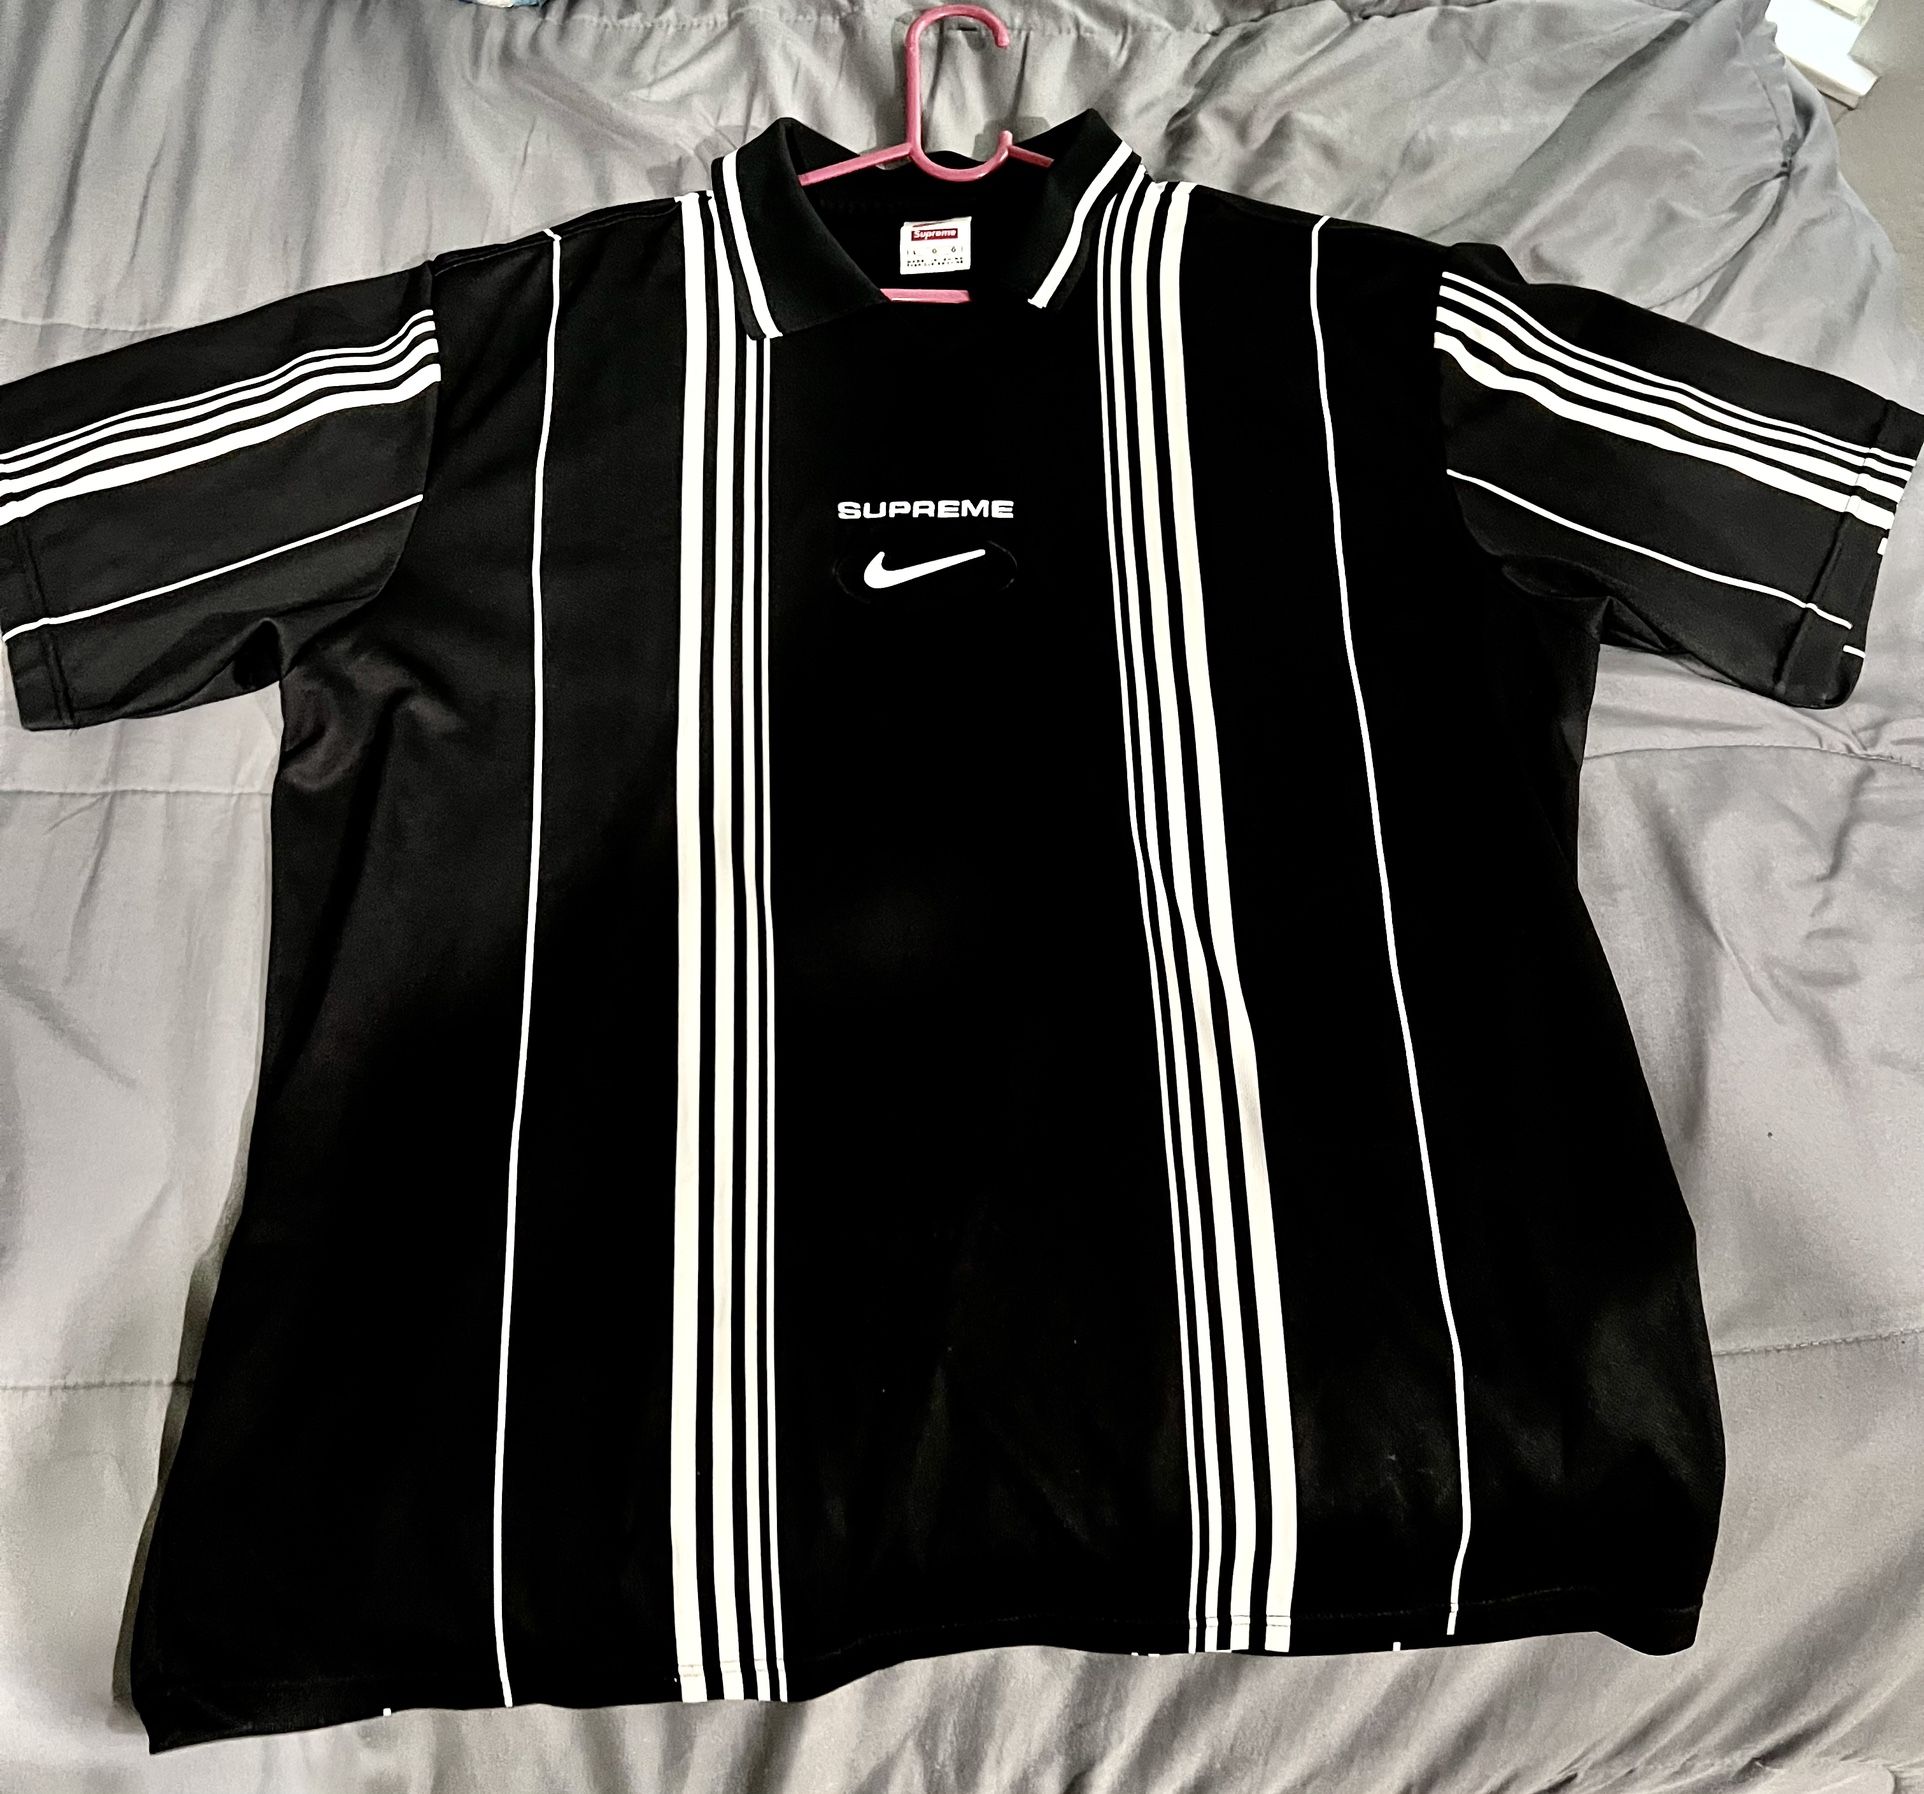 Supreme/ Nike Jewel Stripe Soccer Jersey